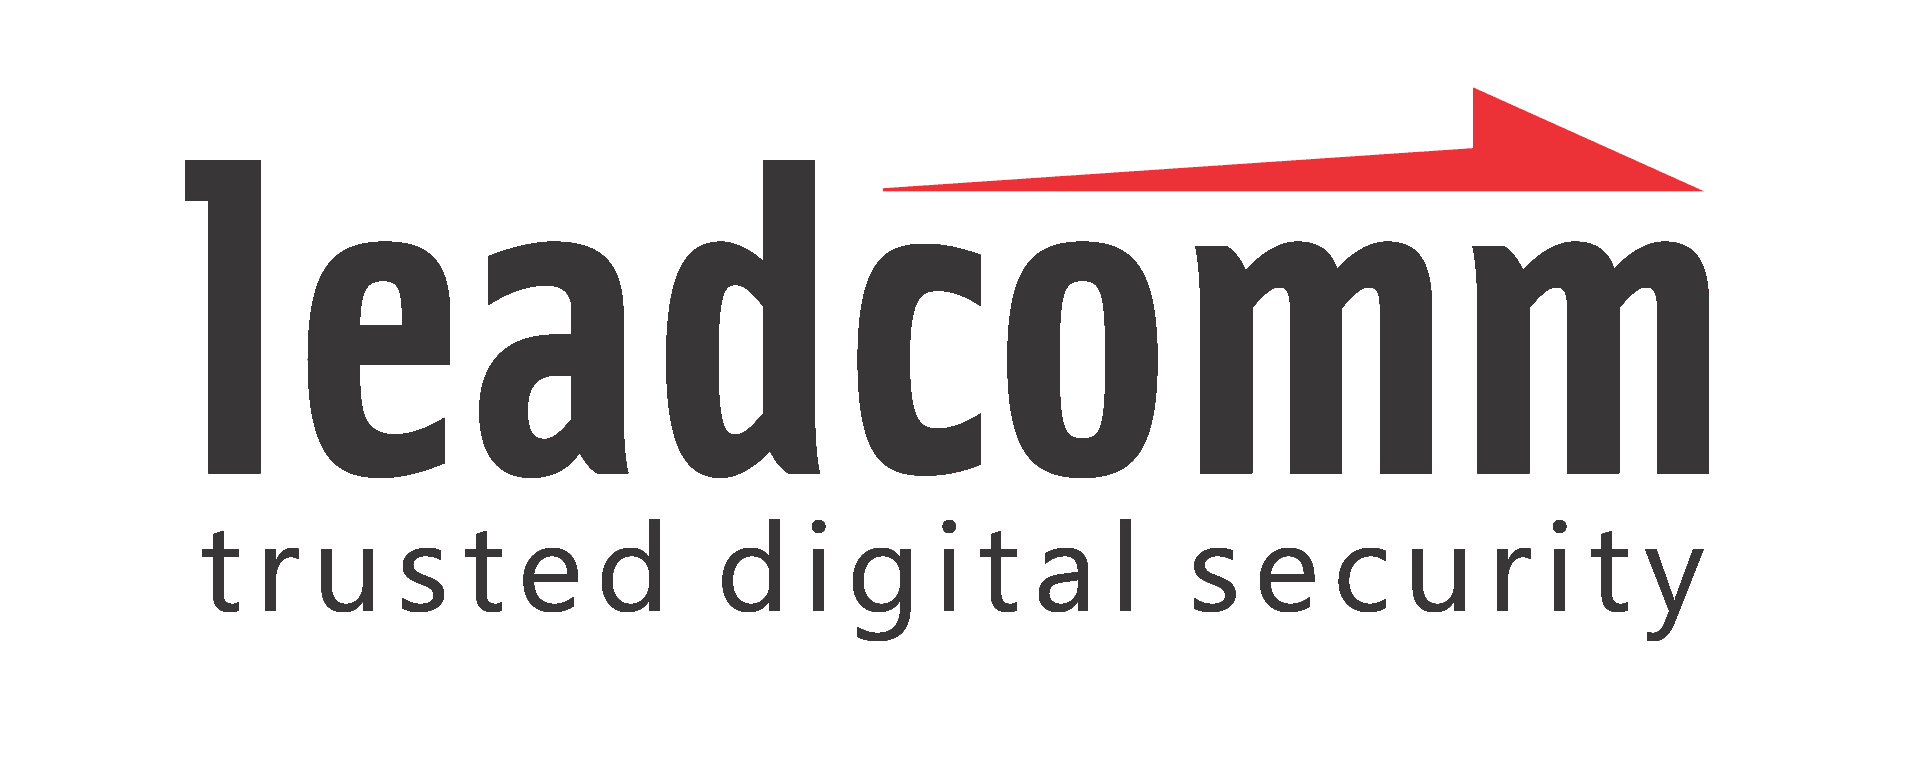 leadcomm logo